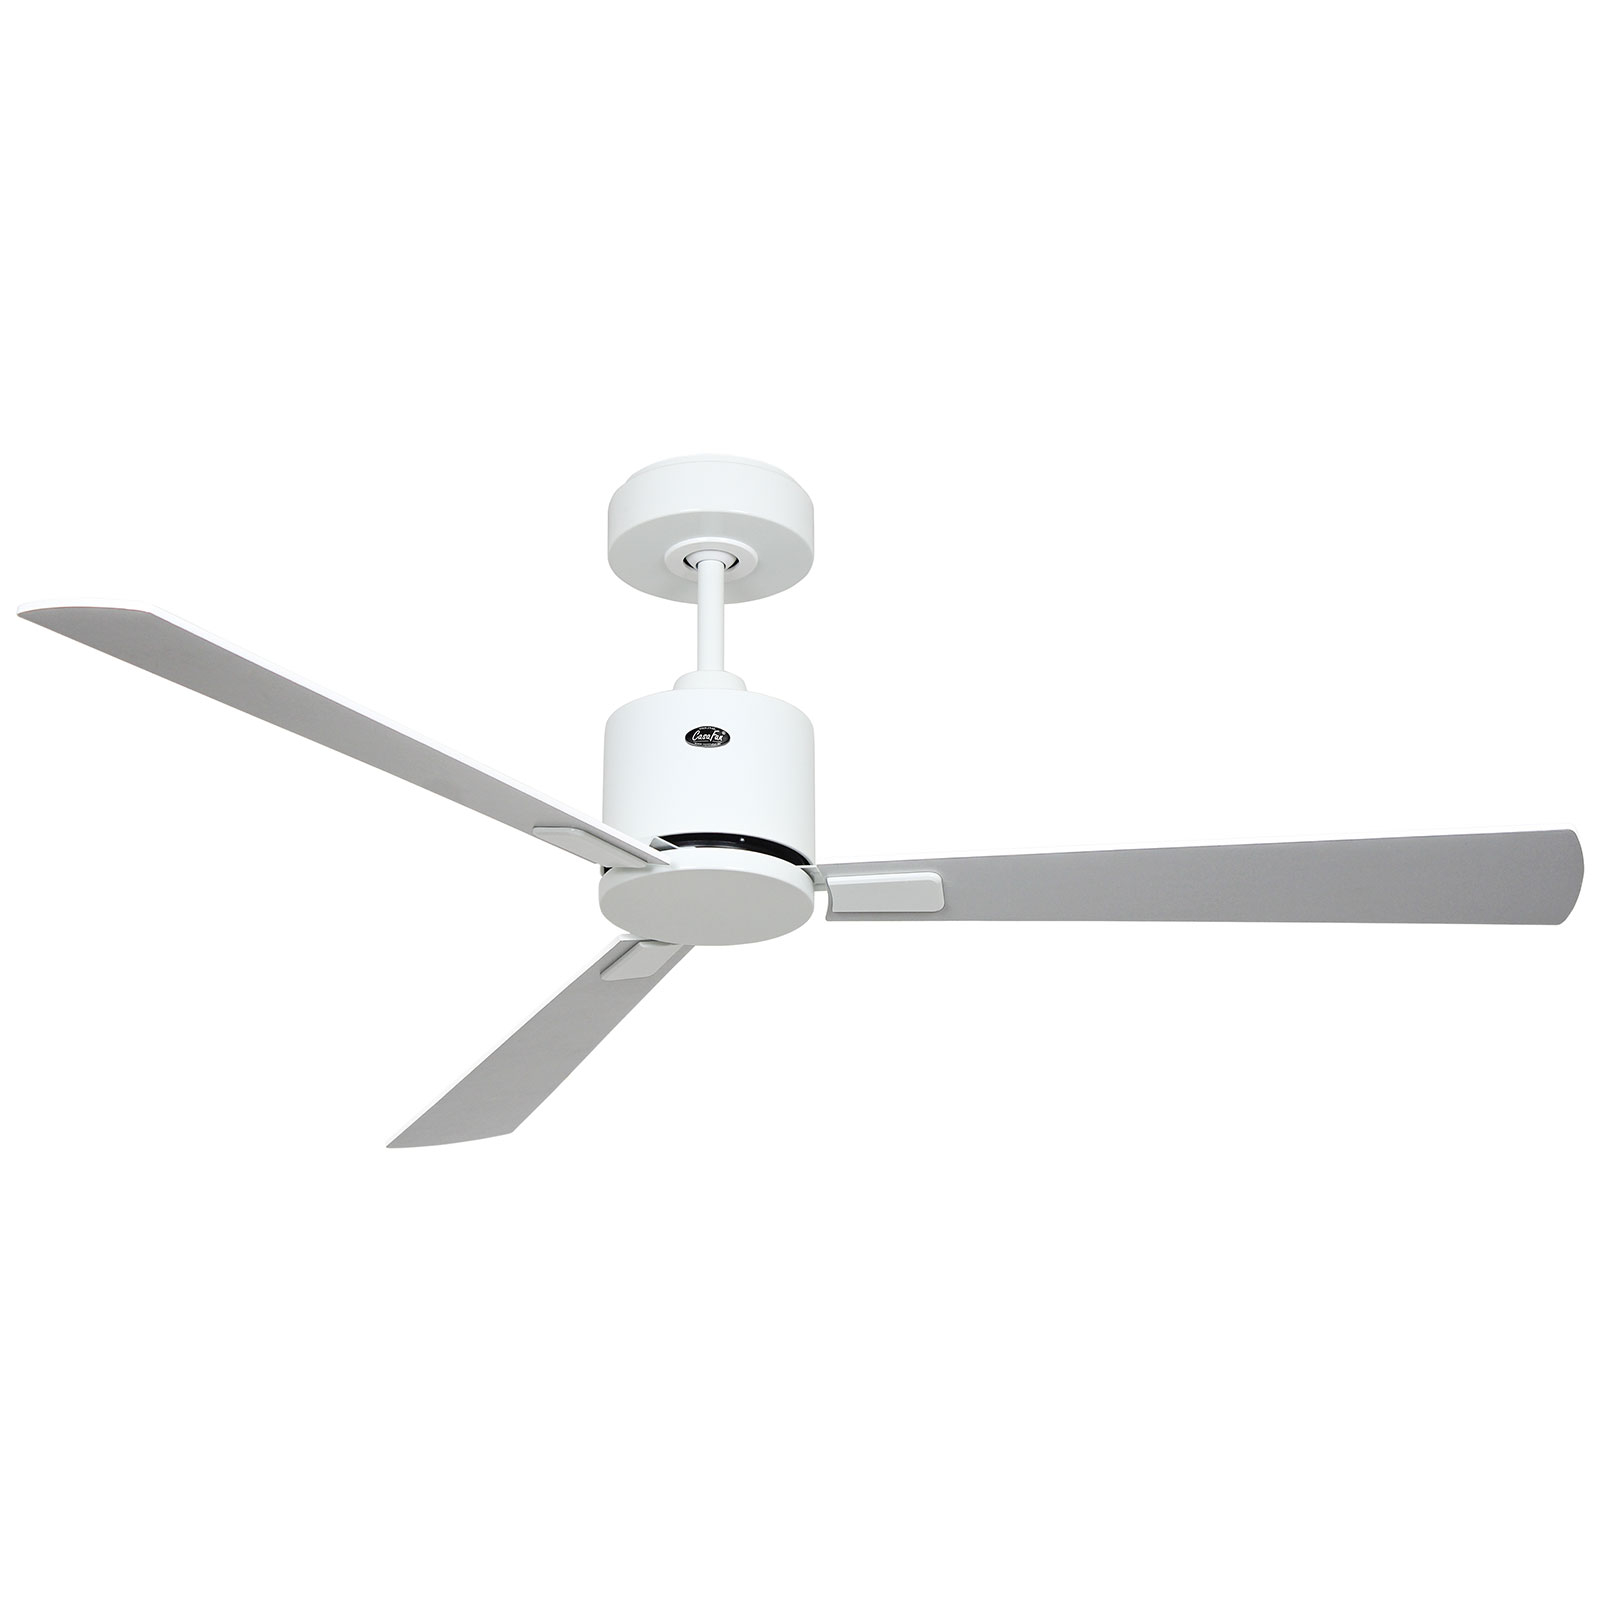 Stropný ventilátor Eco Concept 132 biely/bielosivý